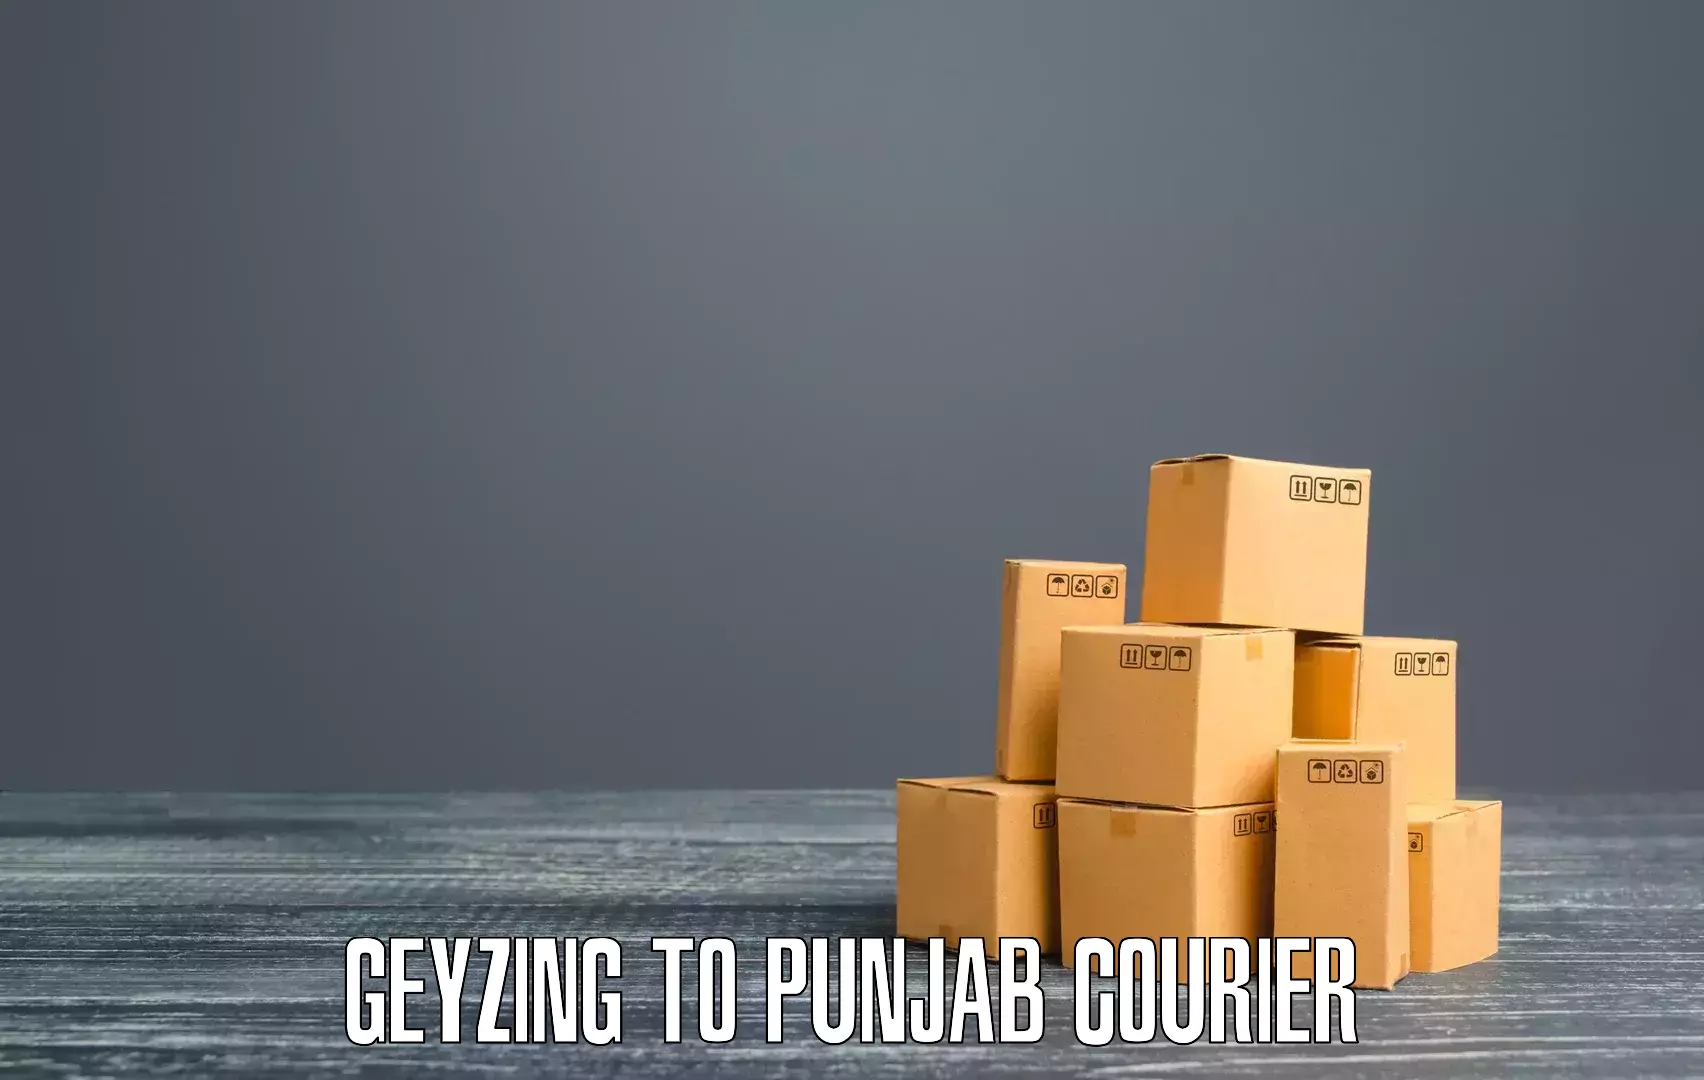 Express courier capabilities Geyzing to Dinanagar